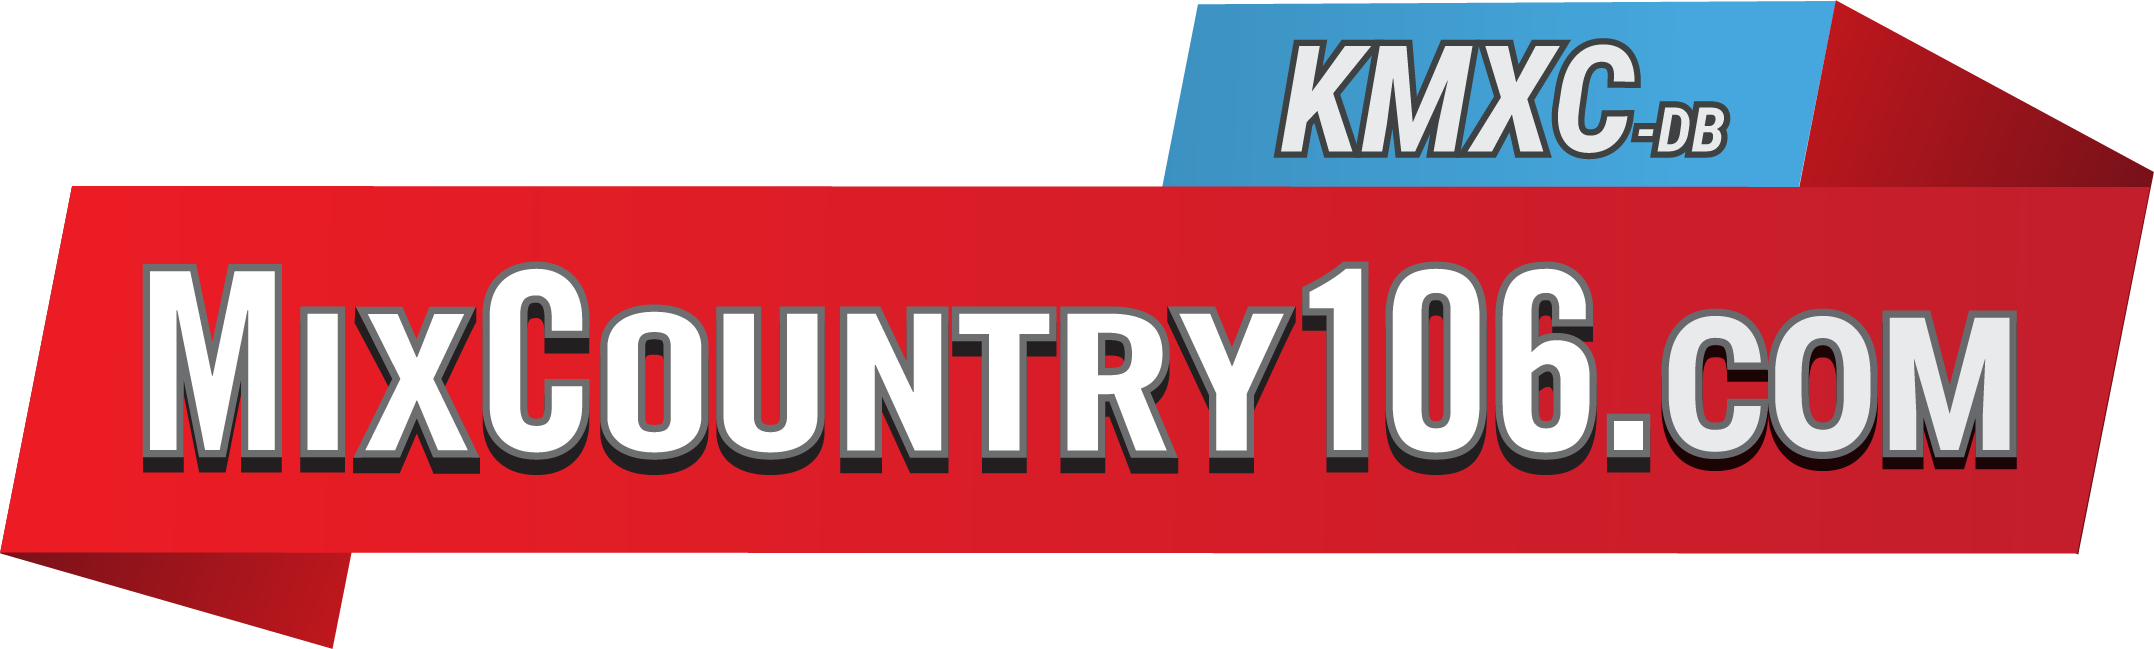 KMXC - Mix Country 106